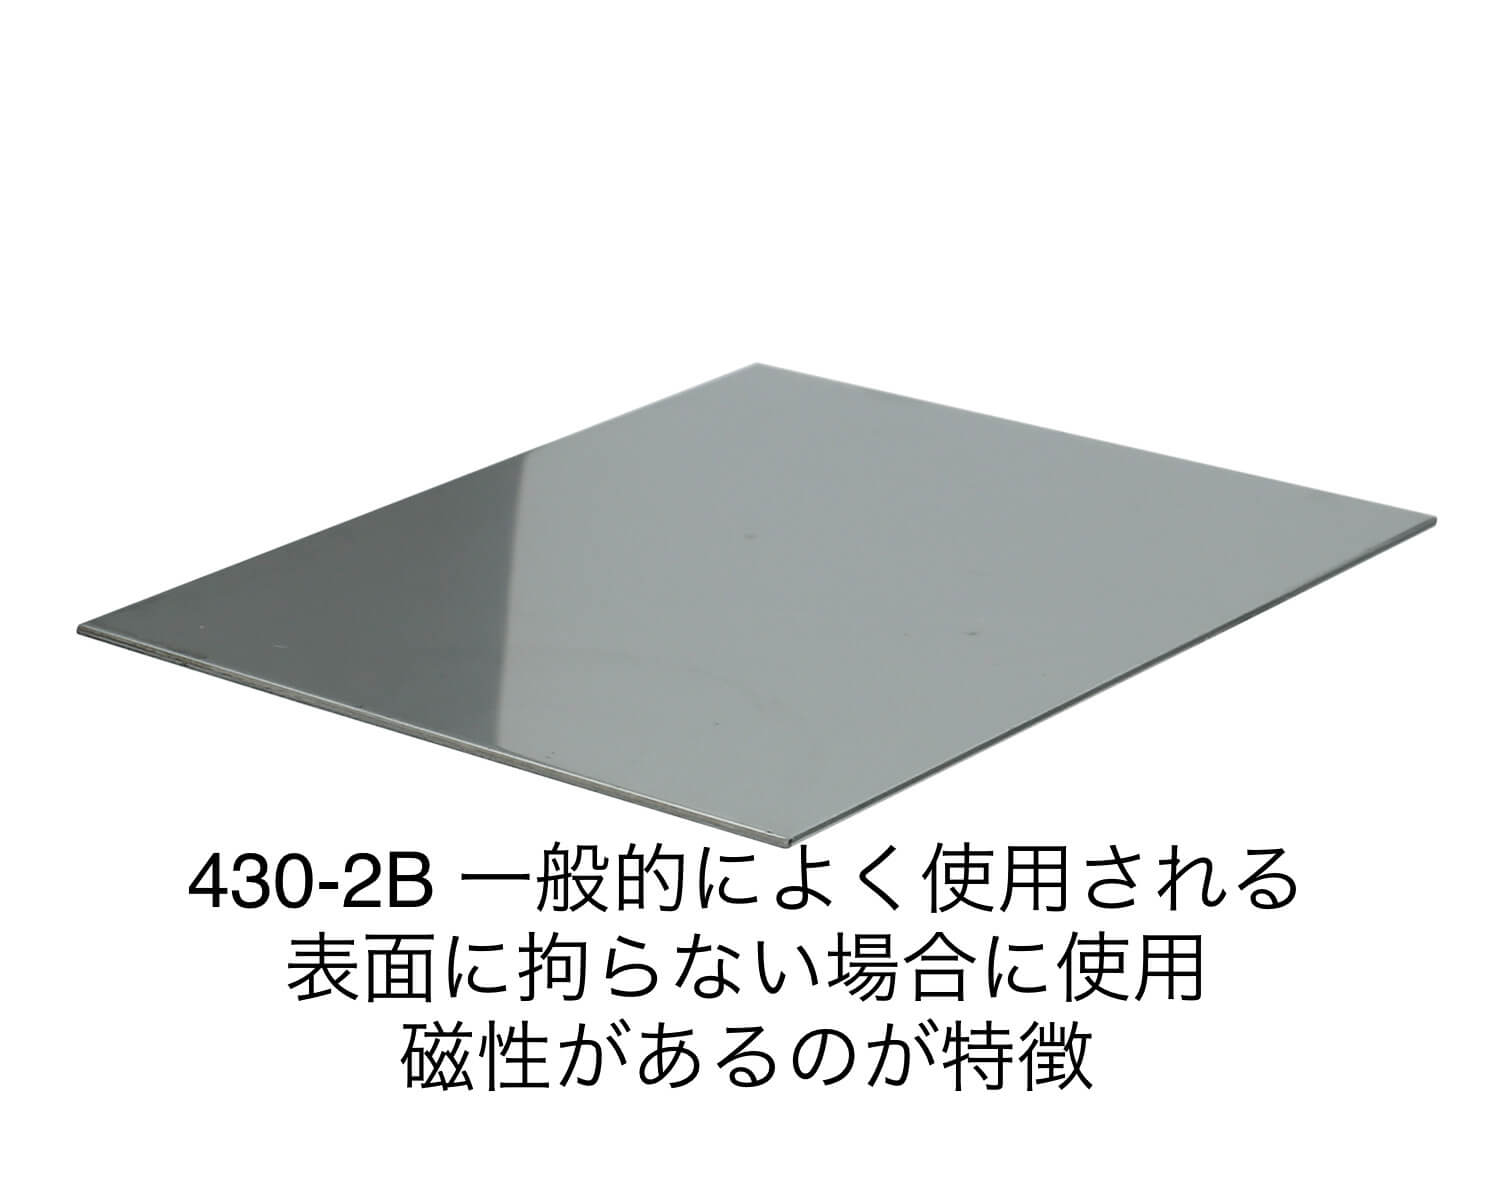 ステンレス板 SUS430-2B 板厚0.8mm 400×600mm オーダーカット 切り板